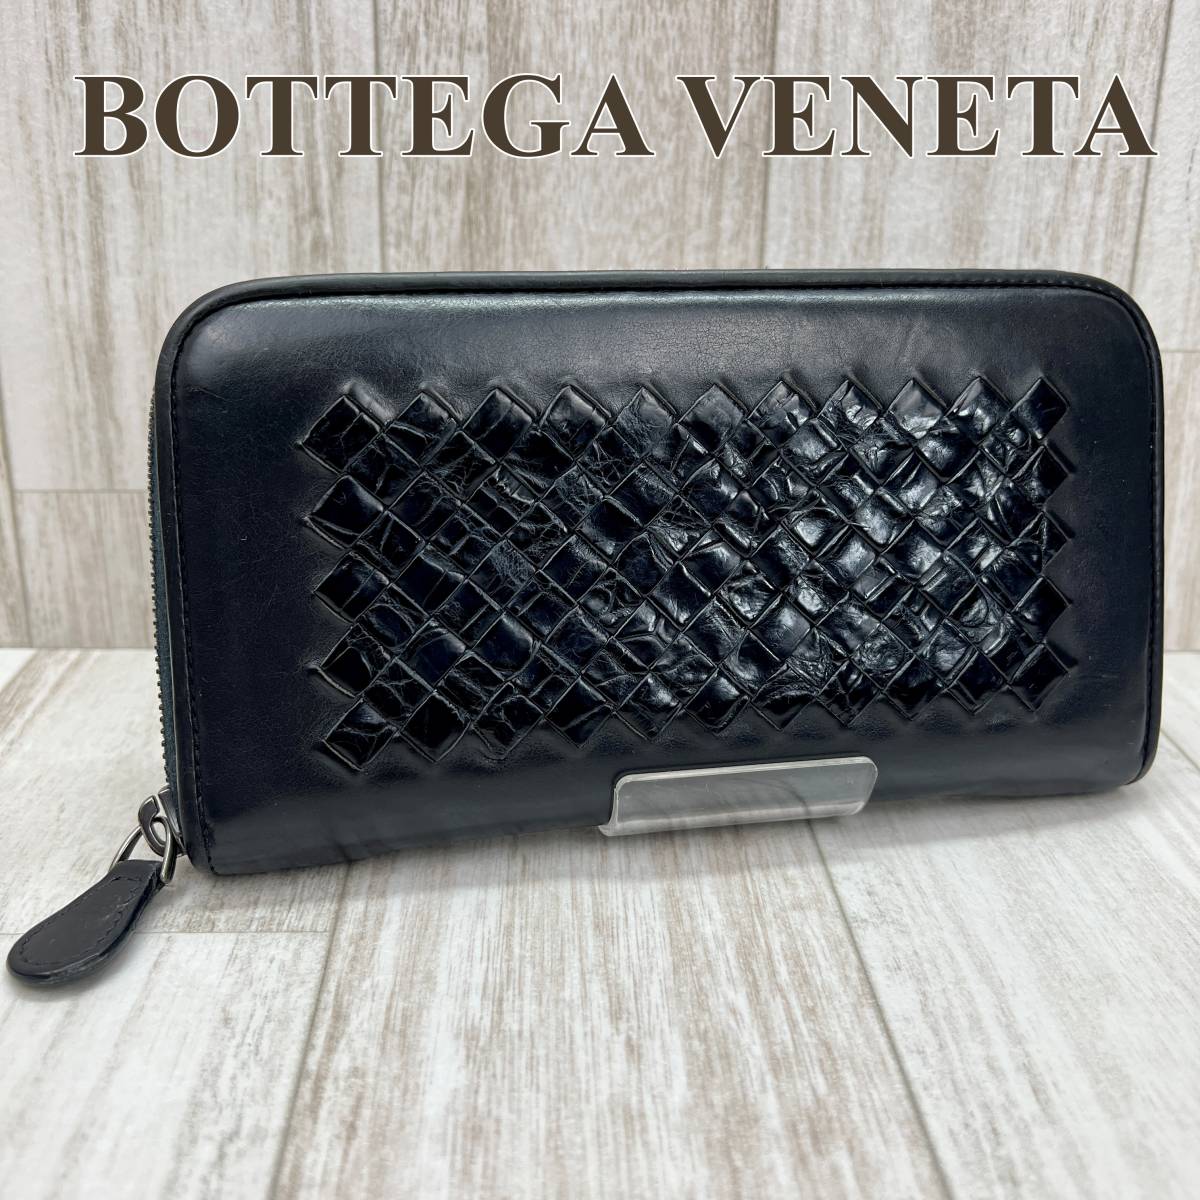 ボッテガヴェネタ BOTTEGA VENETA ラウンドファスナー長財布 ジップアラウンドウォレット イントレチャート クロコダイル ブラック